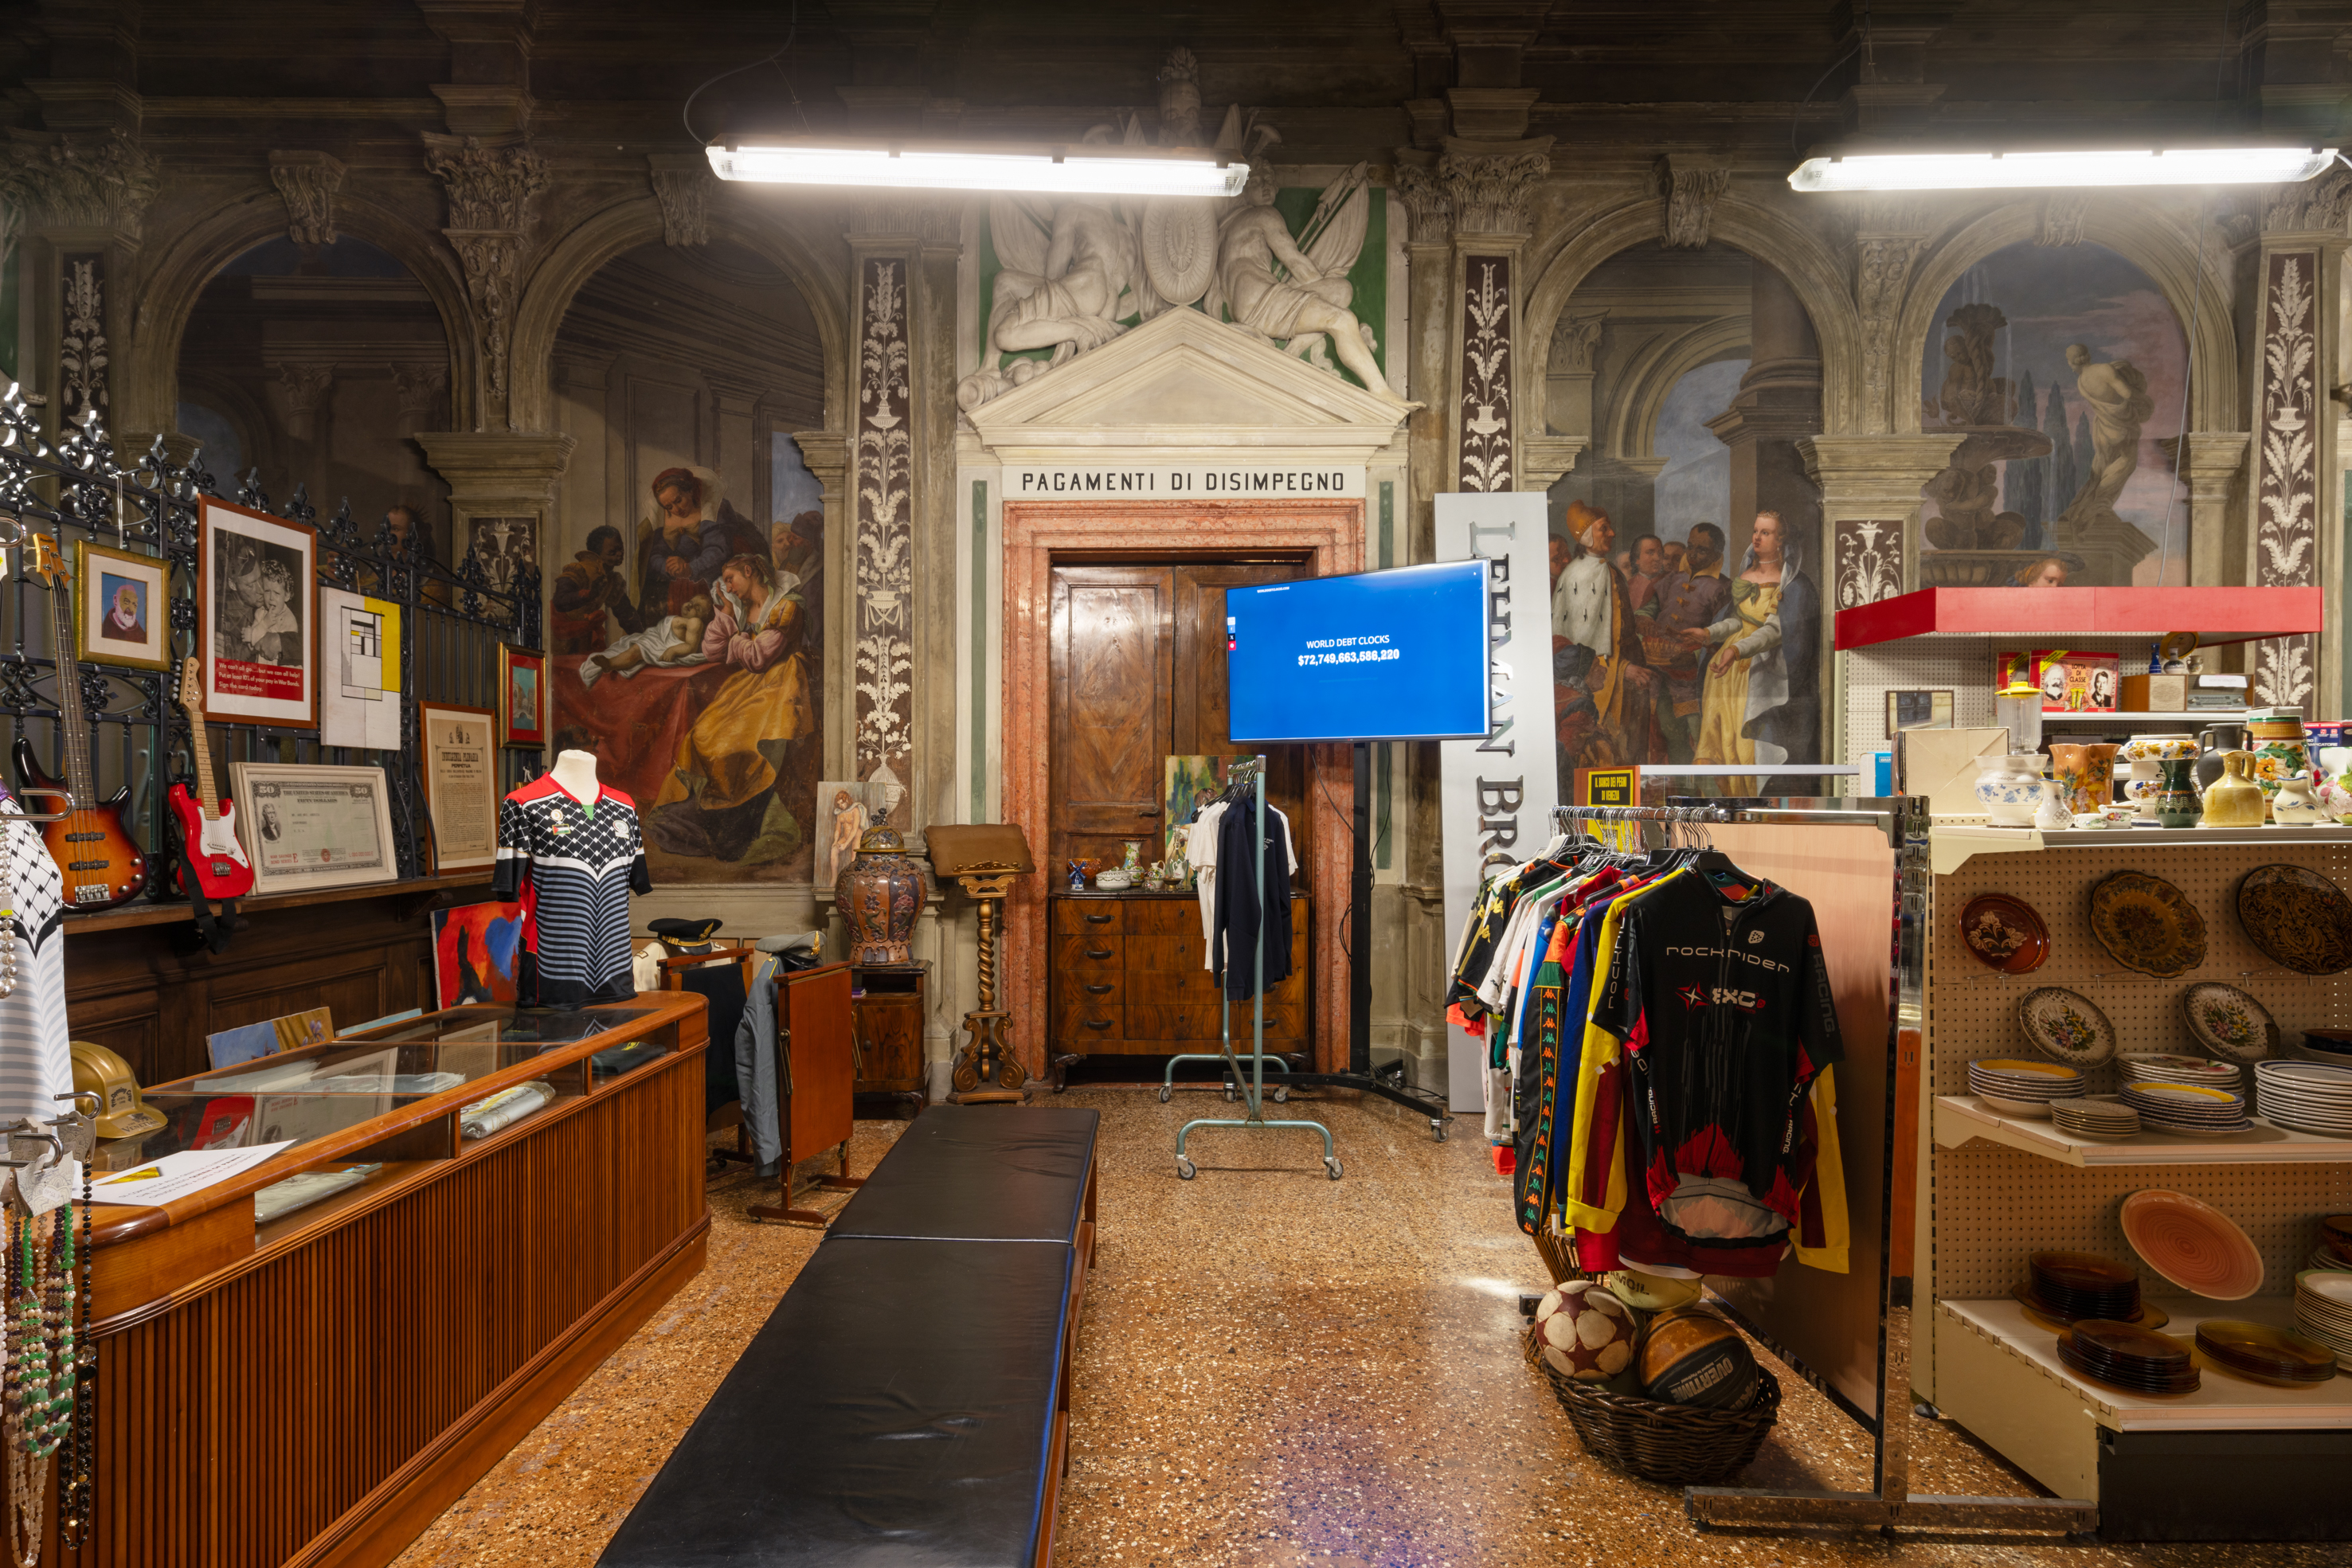 Immagine di “Monte di Pietà” Un progetto di Christoph Büchel Fondazione Prada, Venezia Foto: Marco Cappelletti Courtesy: Fondazione Prada